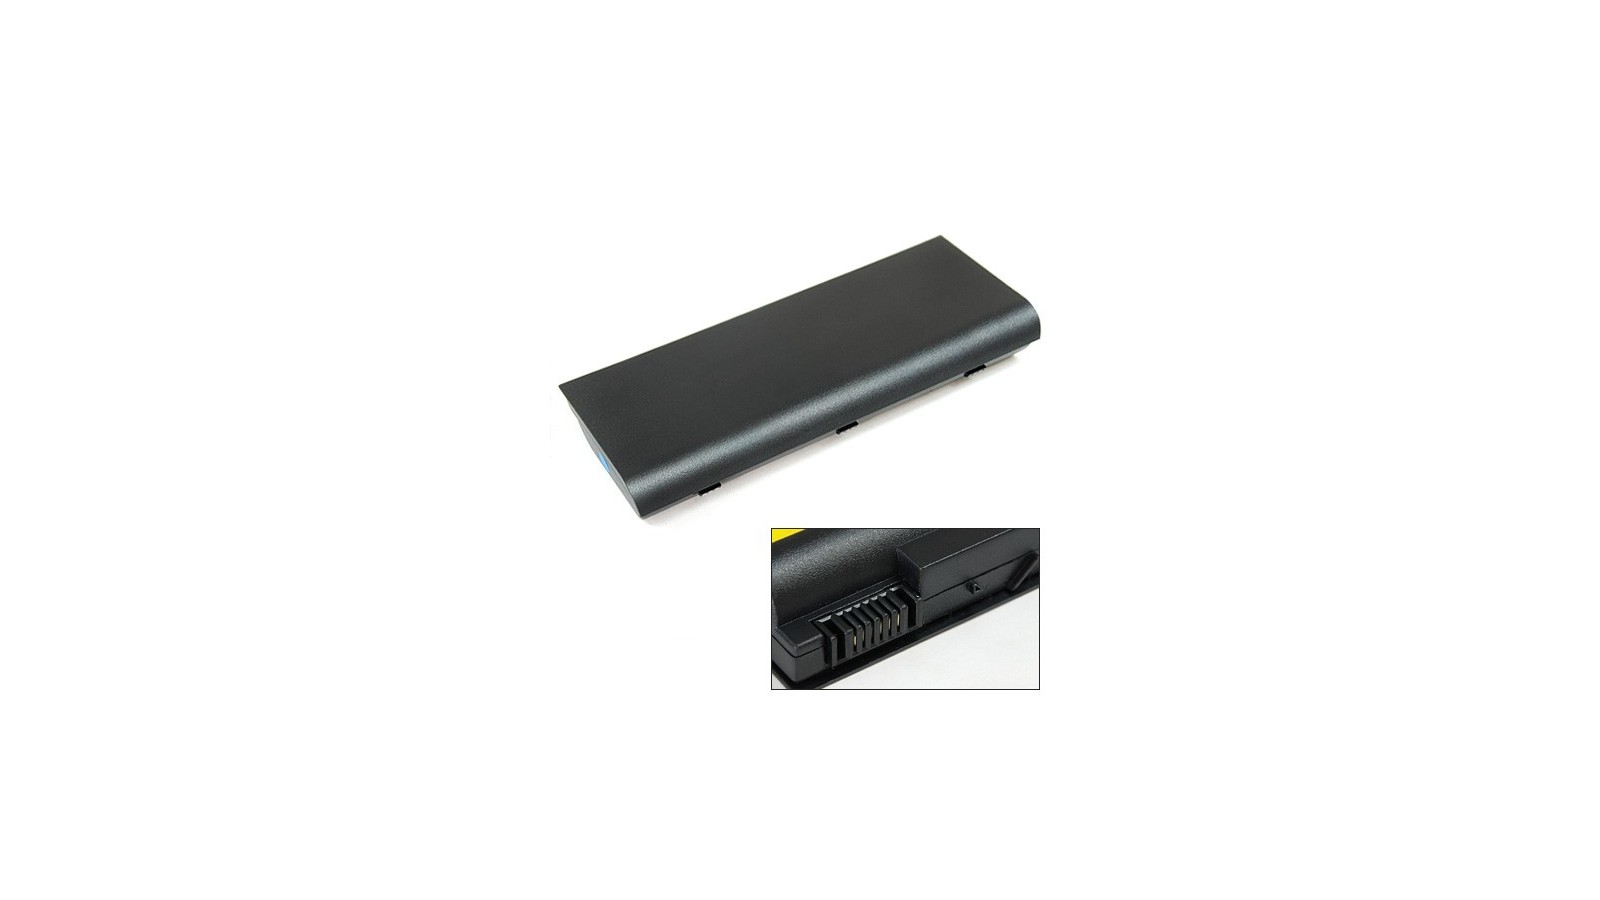 Batteria 8 celle compatibile con HP Pavilion dv8000 / dv8100 / dv8200 / dv8300 / dv8400